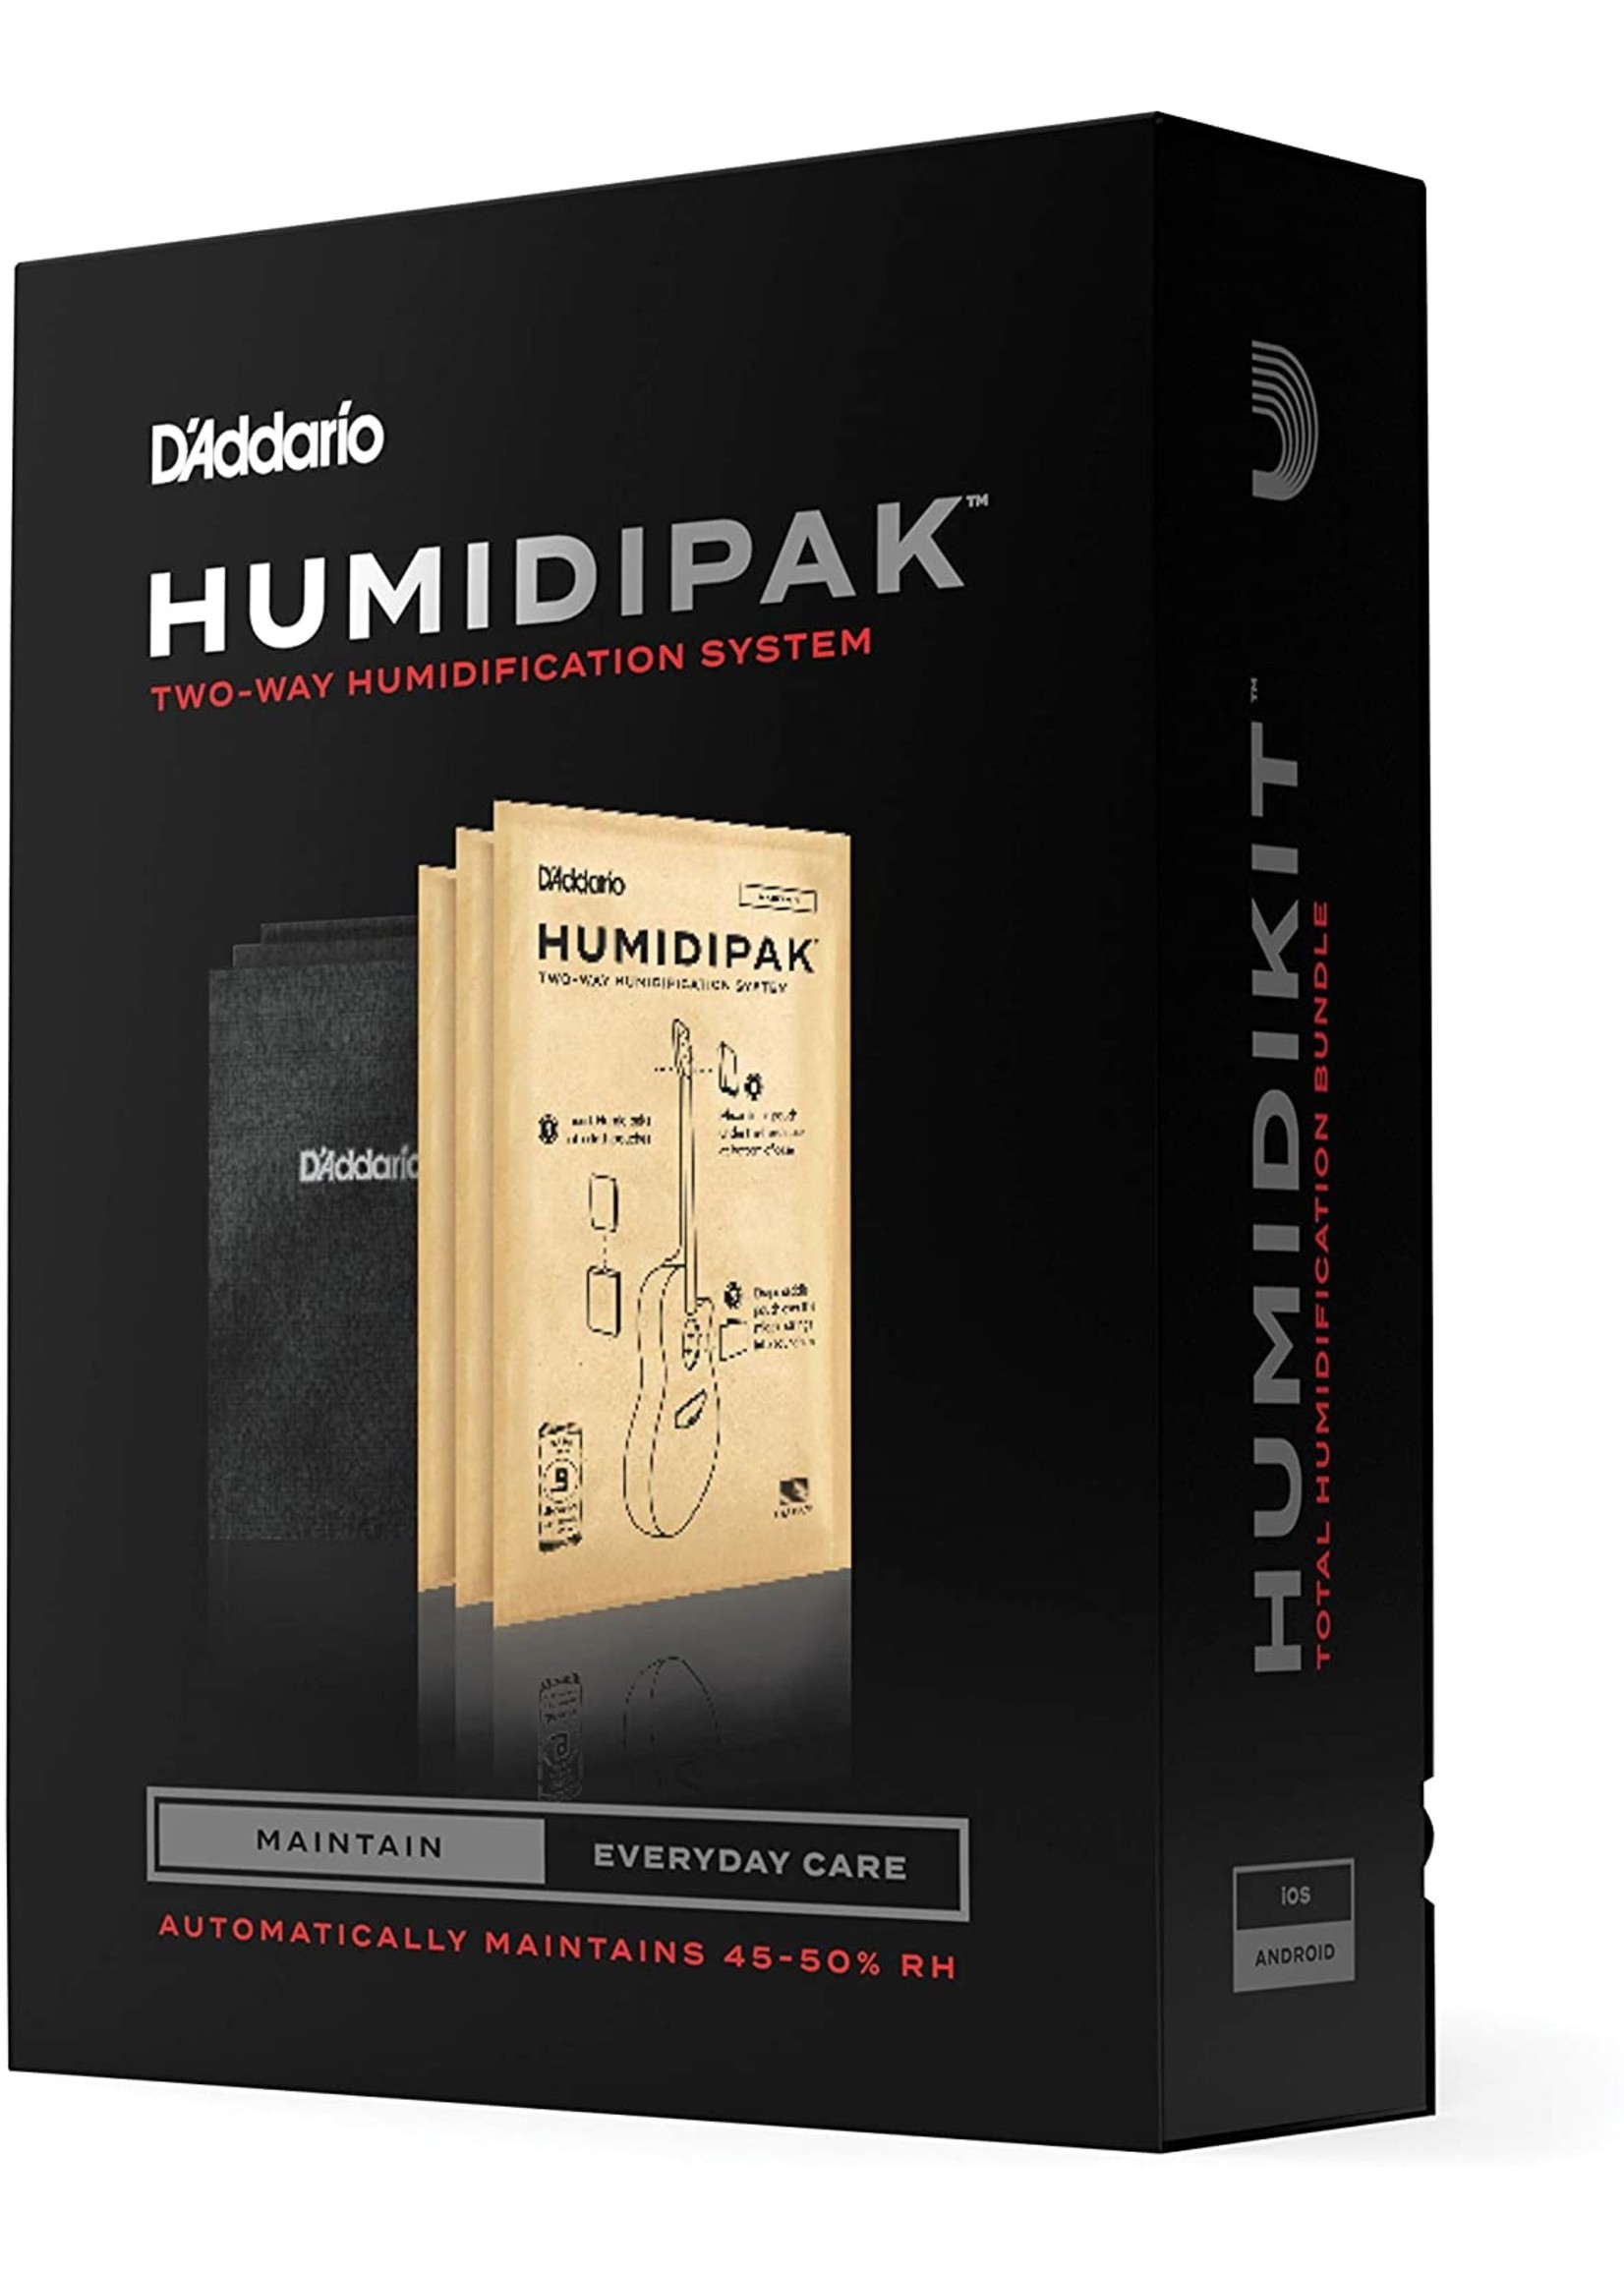 D'Addario Humidipack Two-Way Humidification System